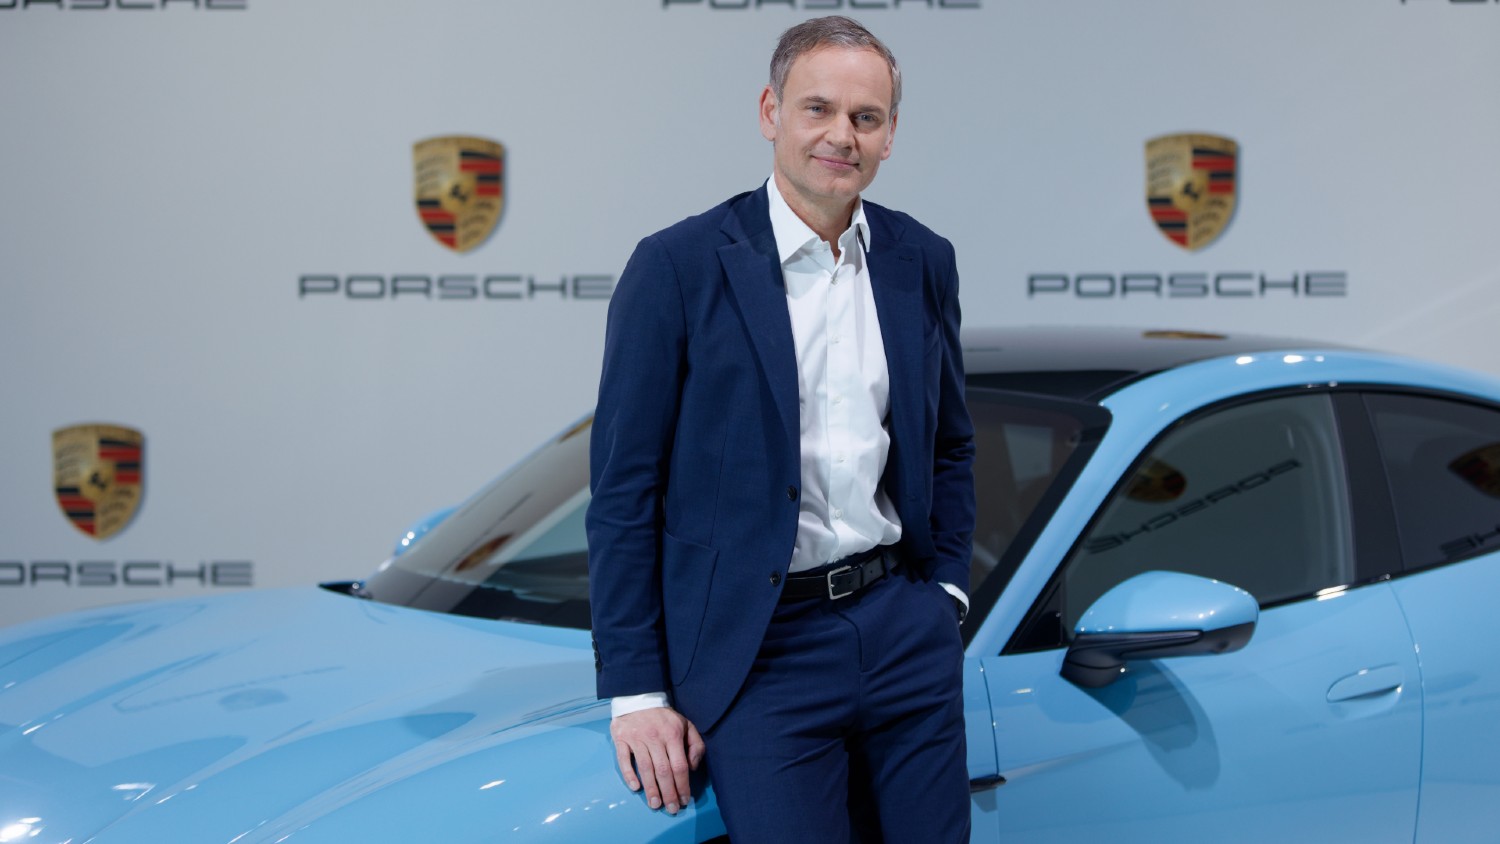 Processo iniciado pelo agora também CEO do Grupo Volkswagen, Oliver Blume, o objectivo da Porsche de ingressar na F1 mantém-se, mesmo depois do fim das negociações com a Red Bull Racing